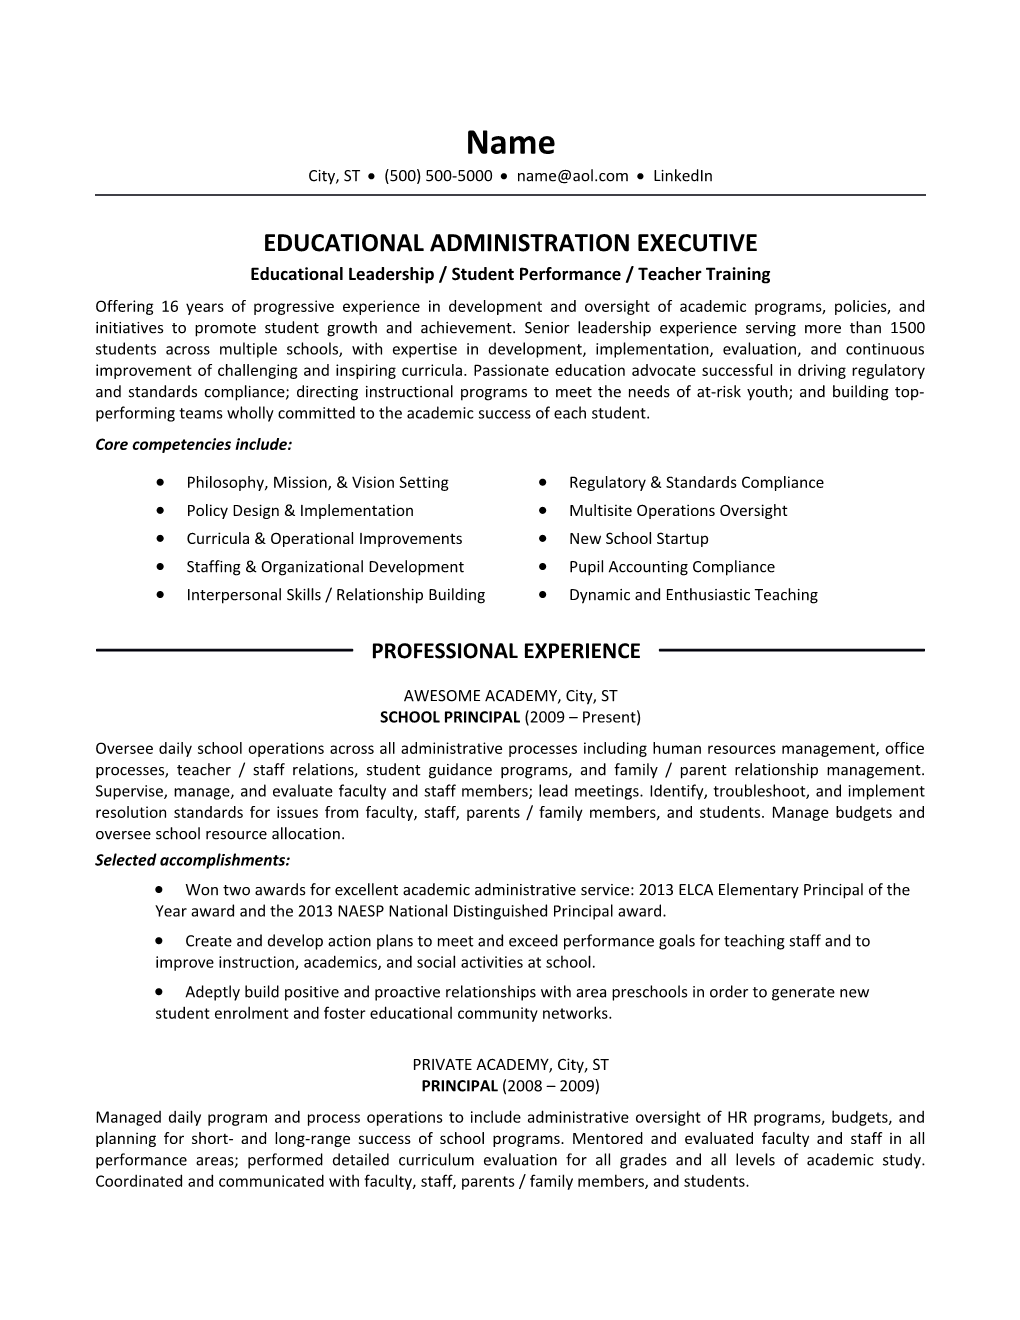 Educational Leadership / Student Performance / Teacher Training